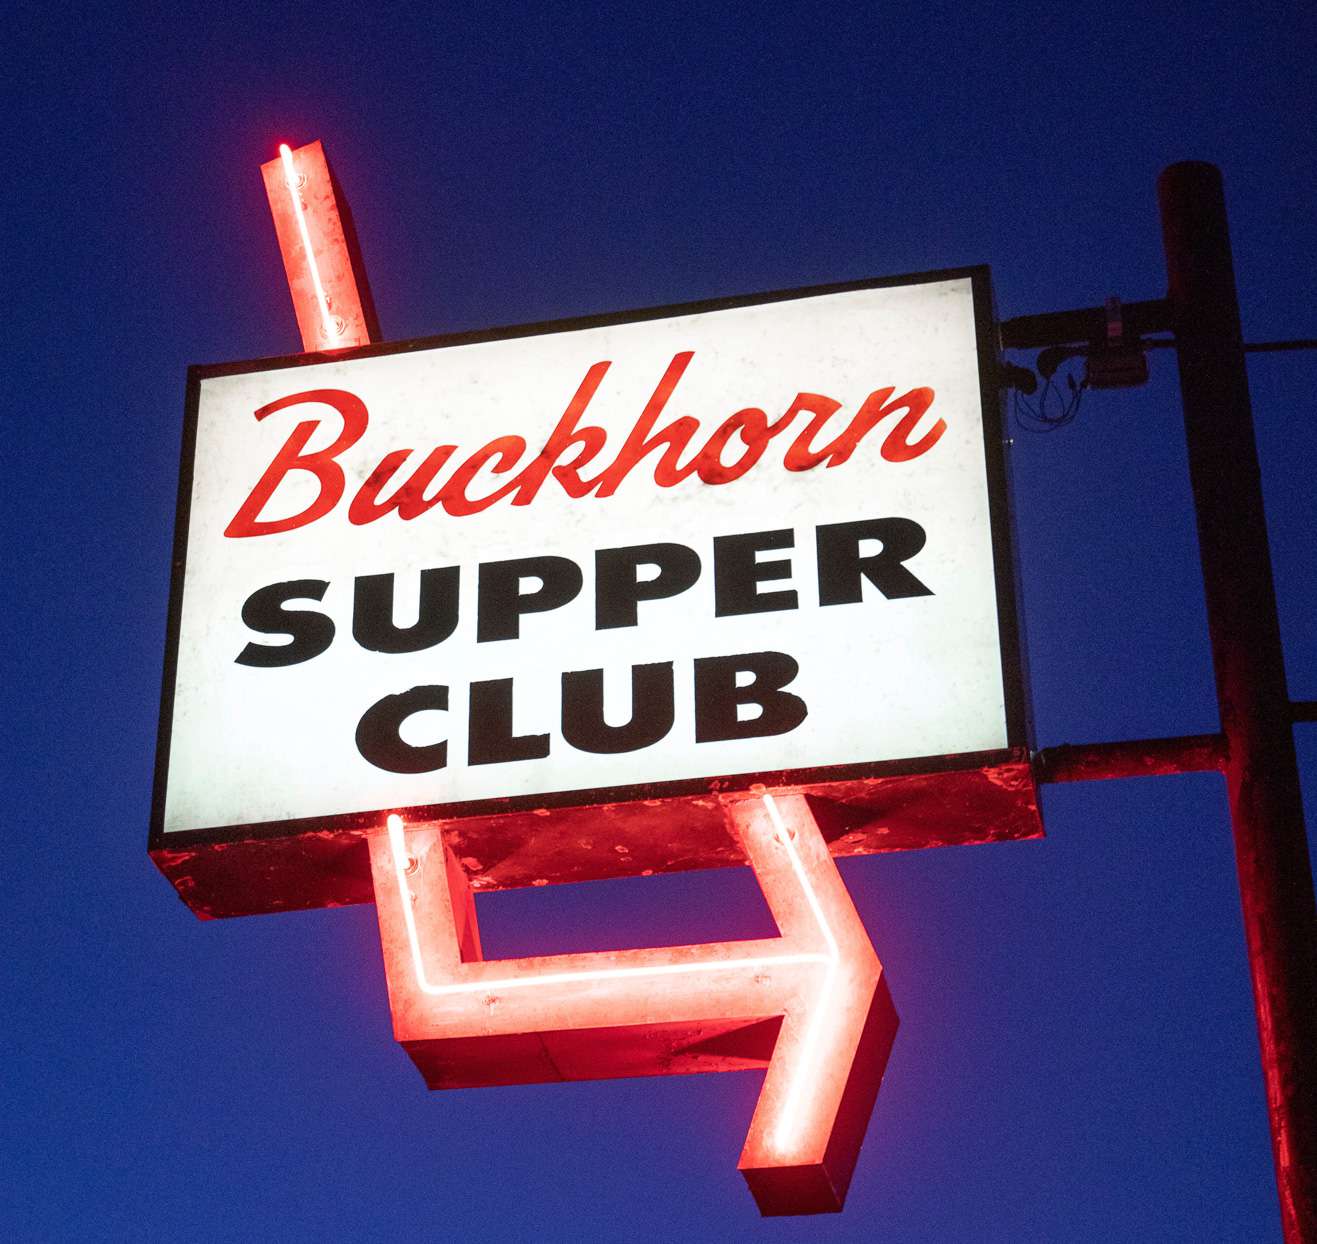 buckhorn supper club sign